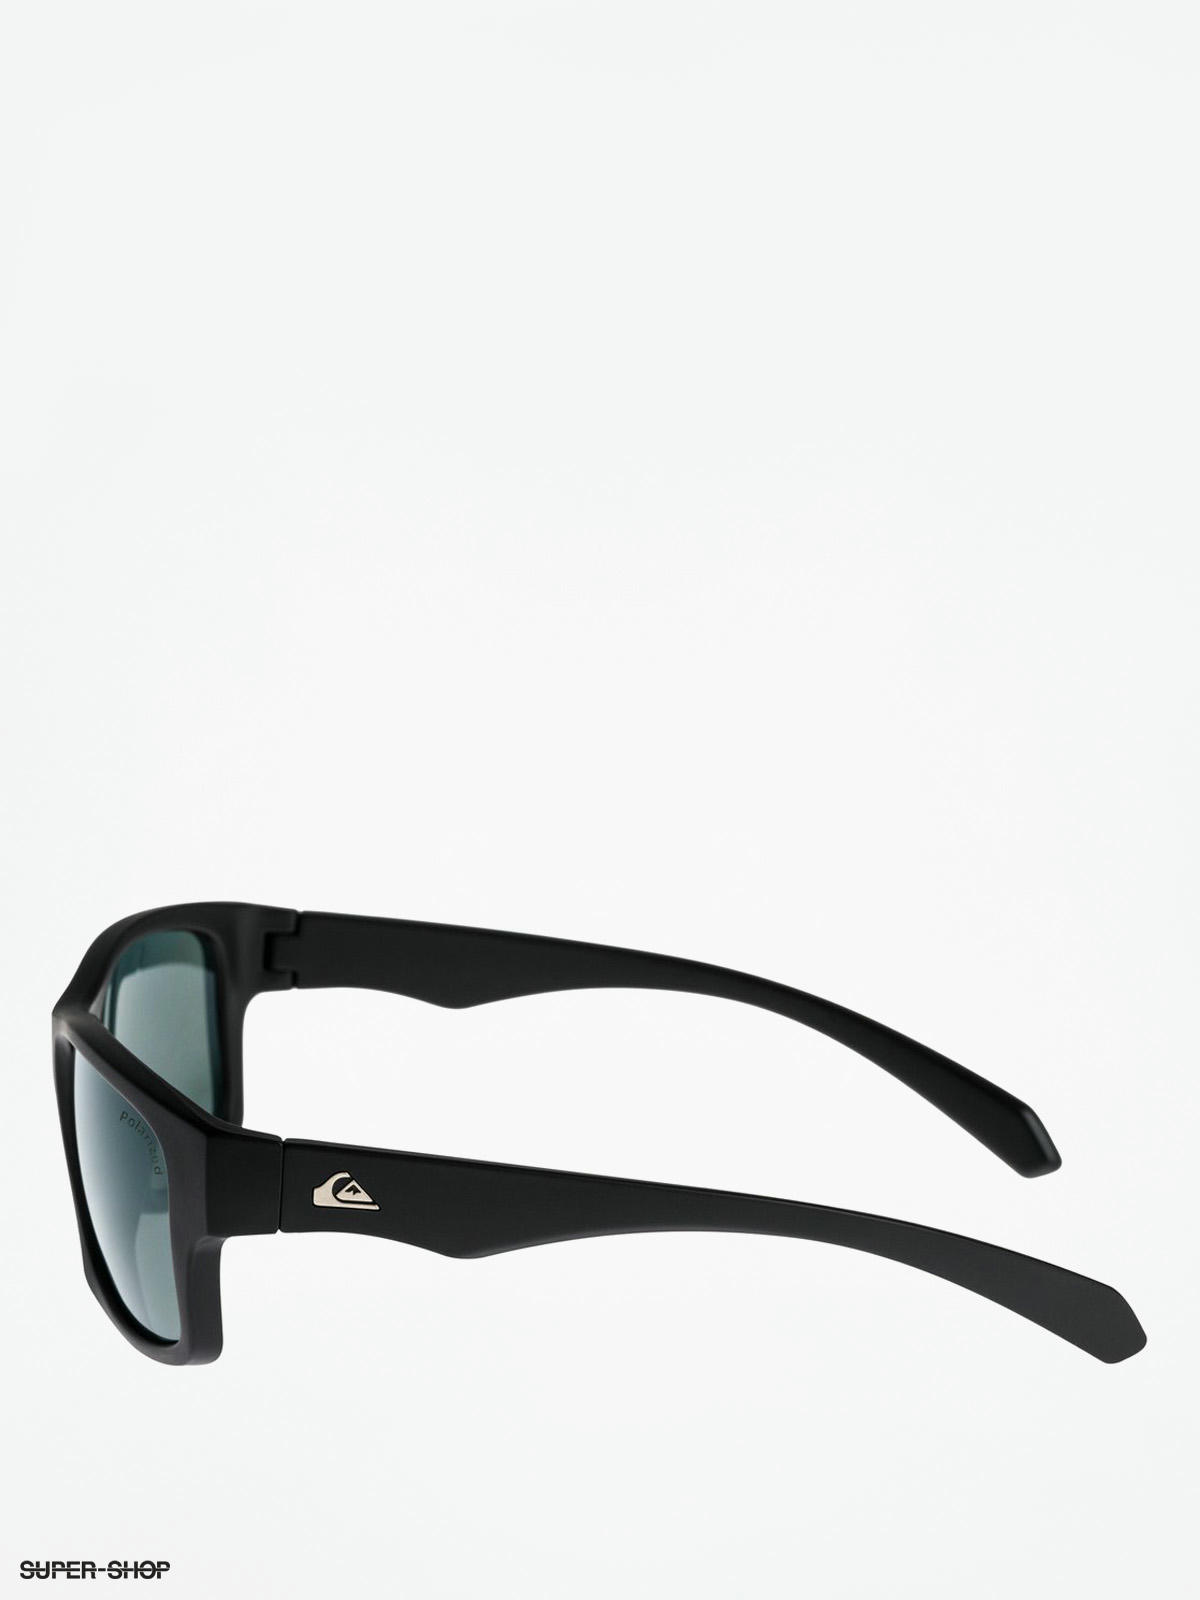 Road (black/plz Off green) Quiksilver Sunglasses